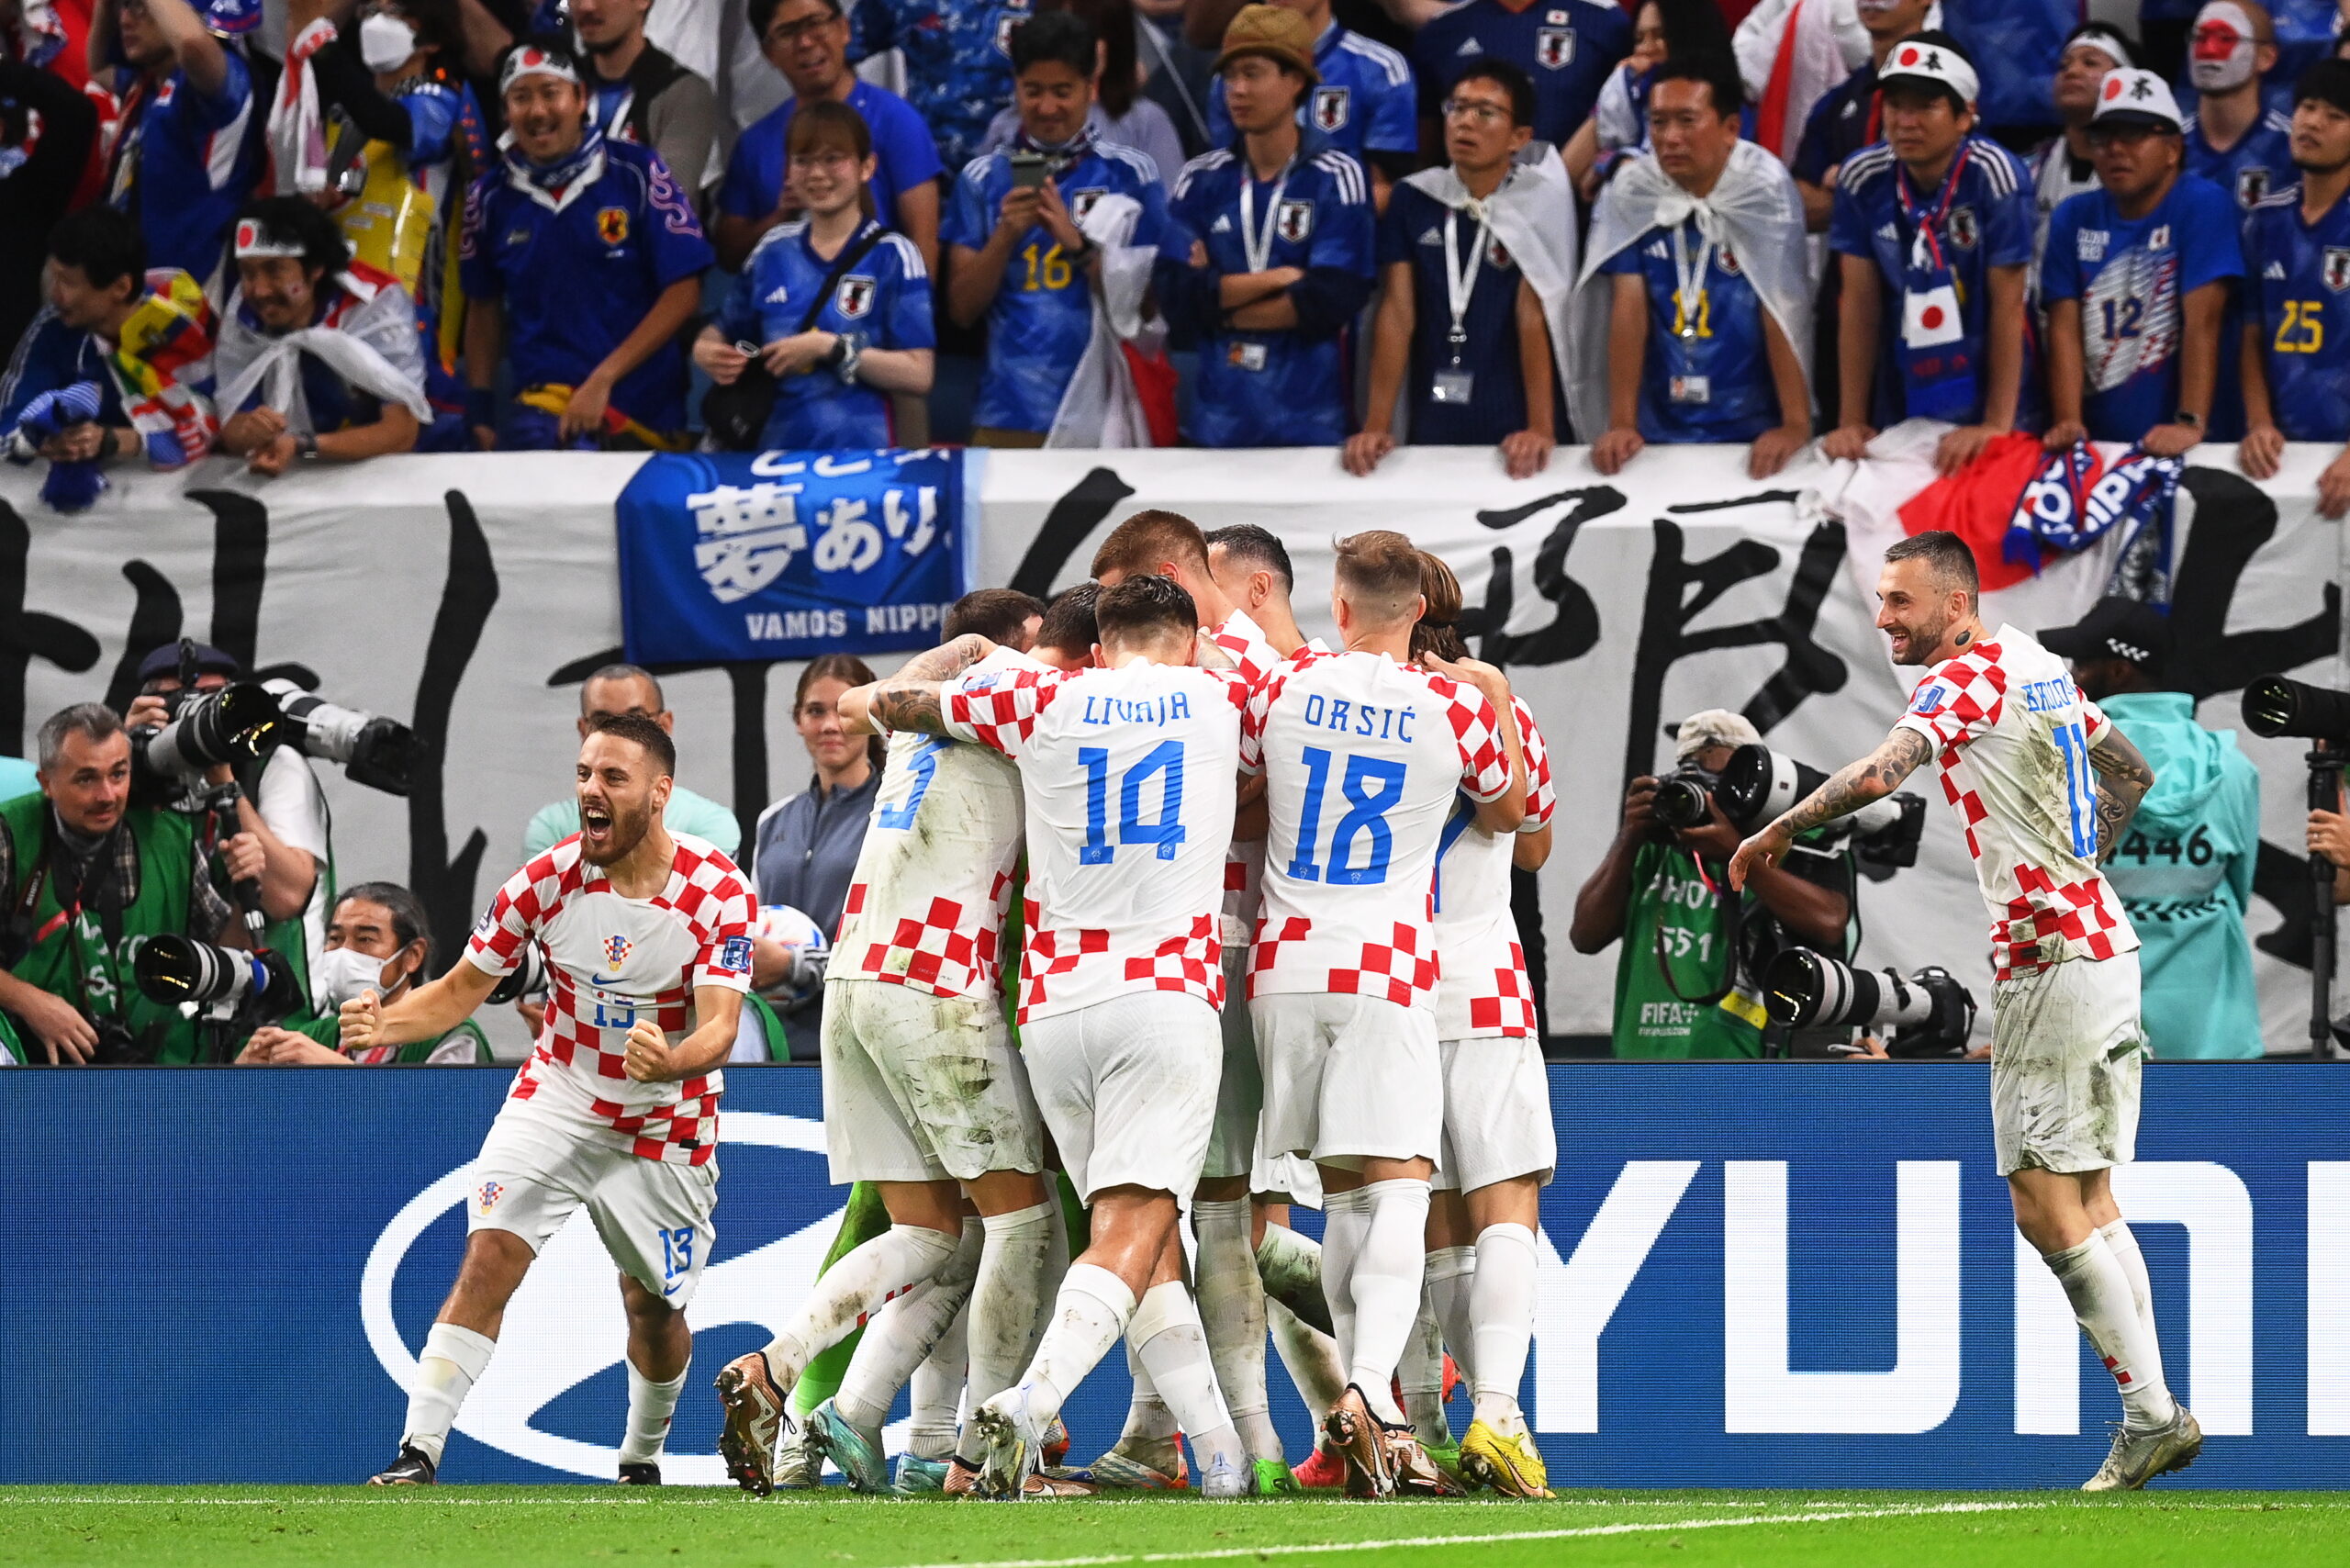 Μουντιάλ 2022, Ιαπωνία - Κροατία 1-3 πεν. (1-1): Οι Κροάτες πήραν το θρίλερ στα πέναλτι με ήρωα τον Λιβάκοβιτς και πέταξαν στους "8"